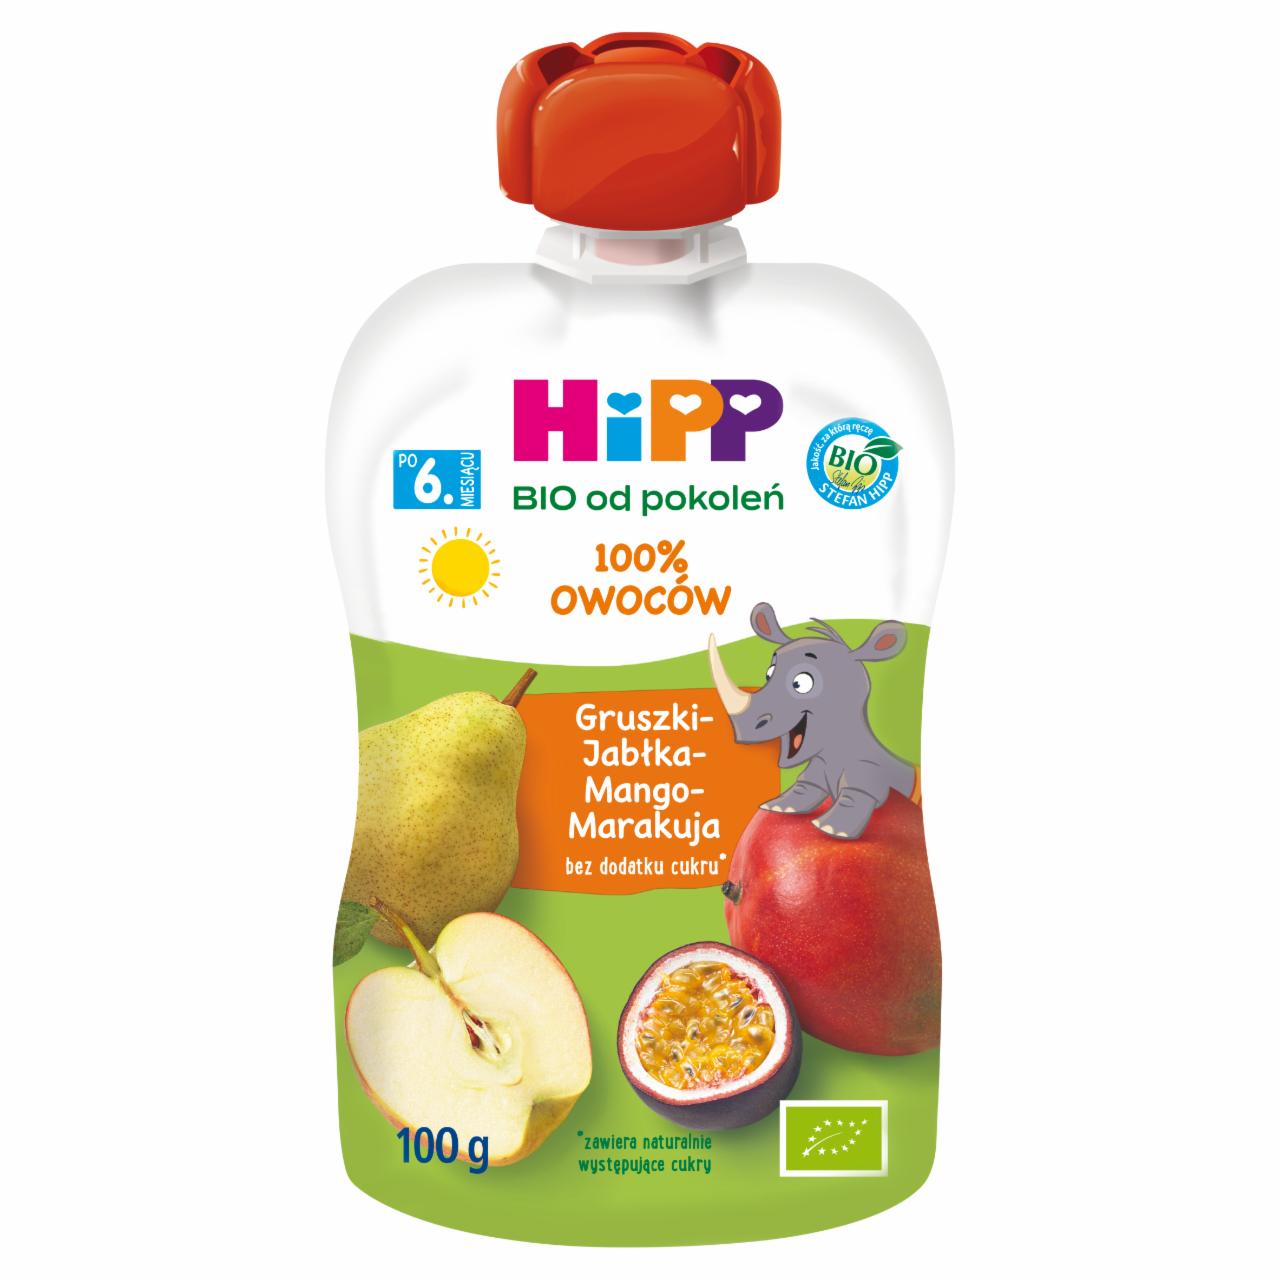 Zdjęcia - HiPP BIO Mus owocowy 100% owoców po 6. miesiącu gruszki-jabłka-mango-marakuja 100 g